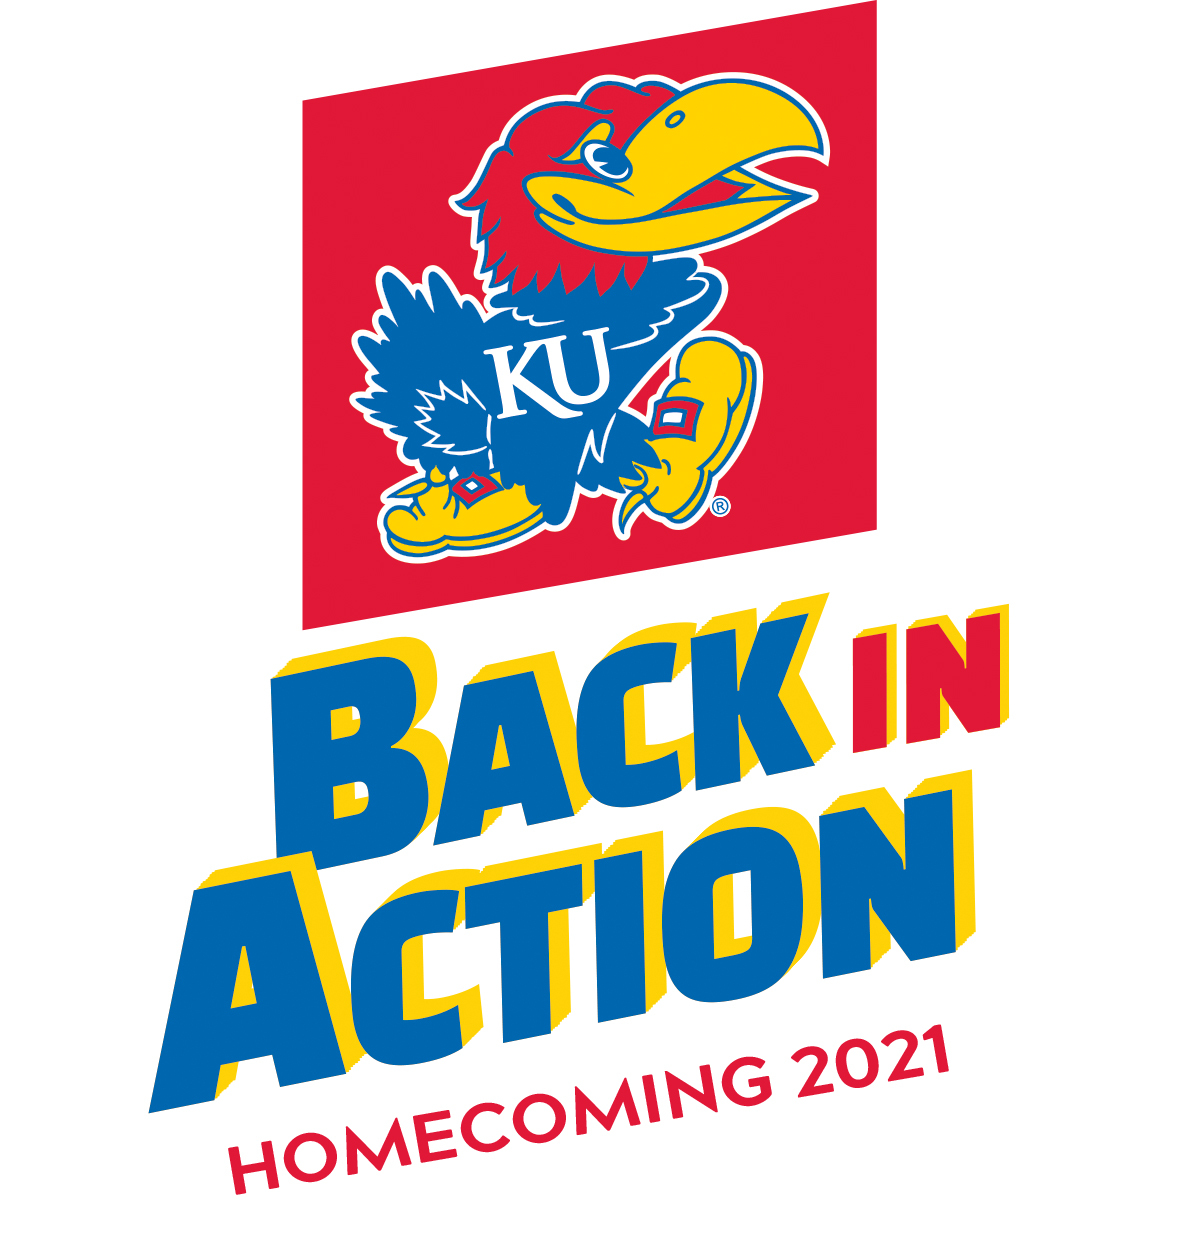 2021 Homecoming logo